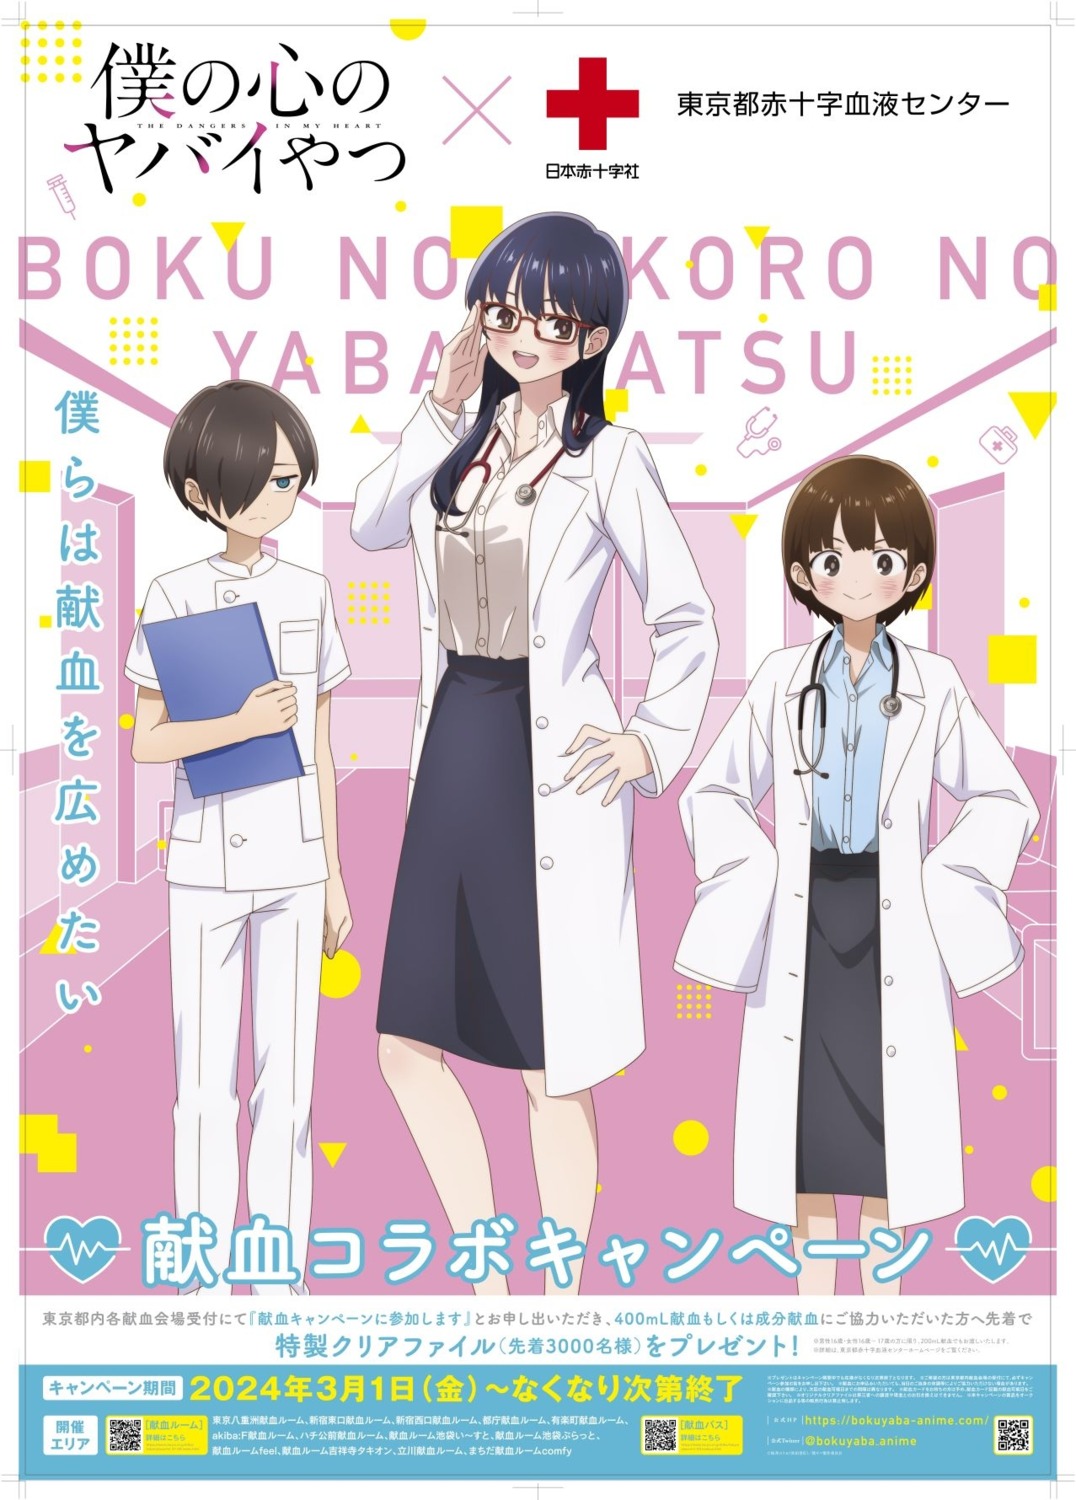 Boku no Kokoro no Yabai Yatsu (anime), BokuYaba Wiki